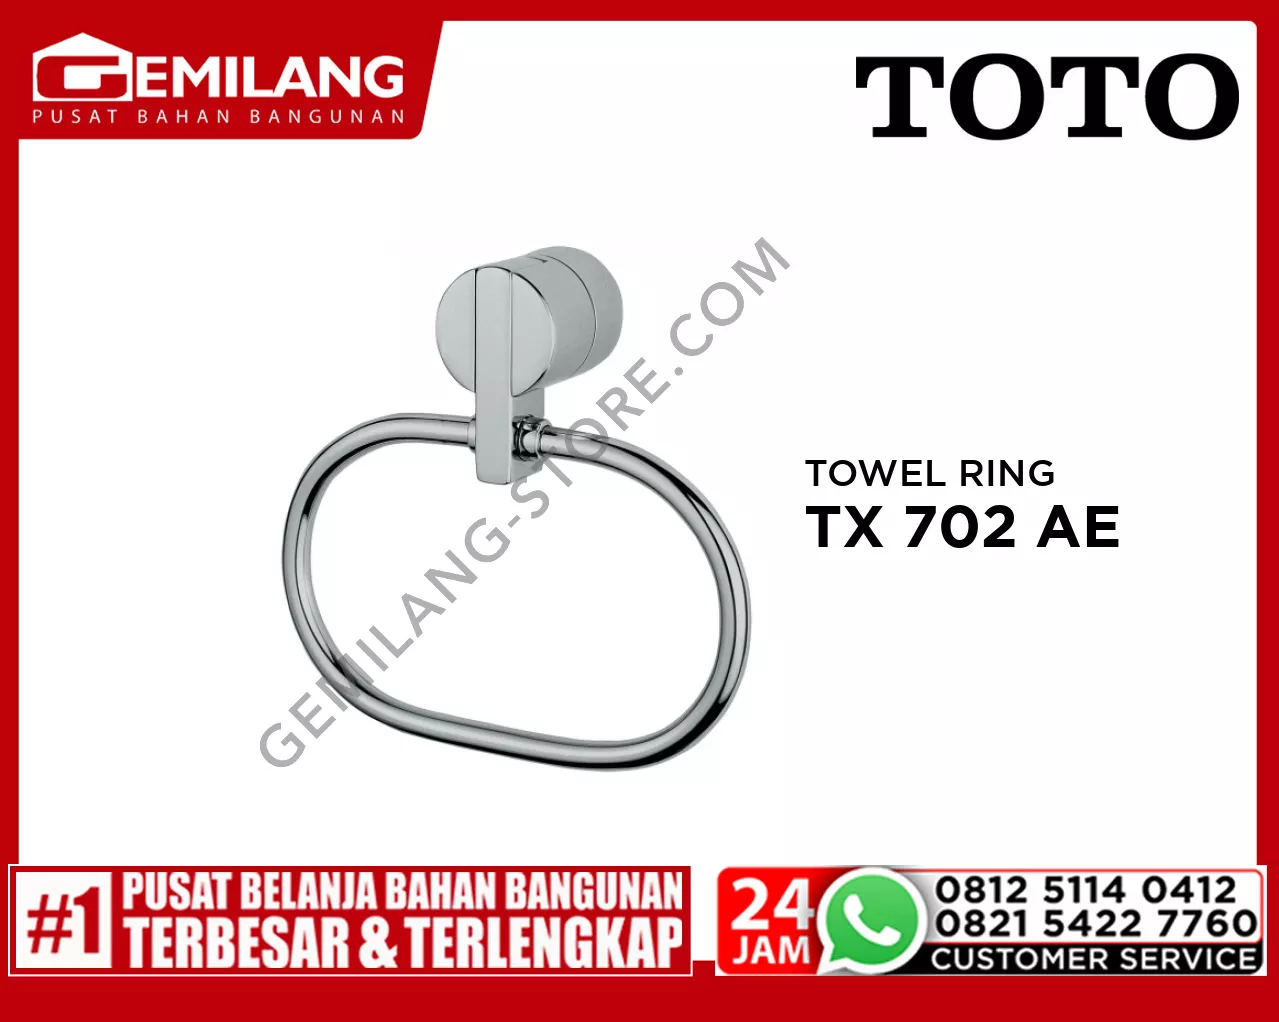 TOTO TOWEL RING TX 702 AE